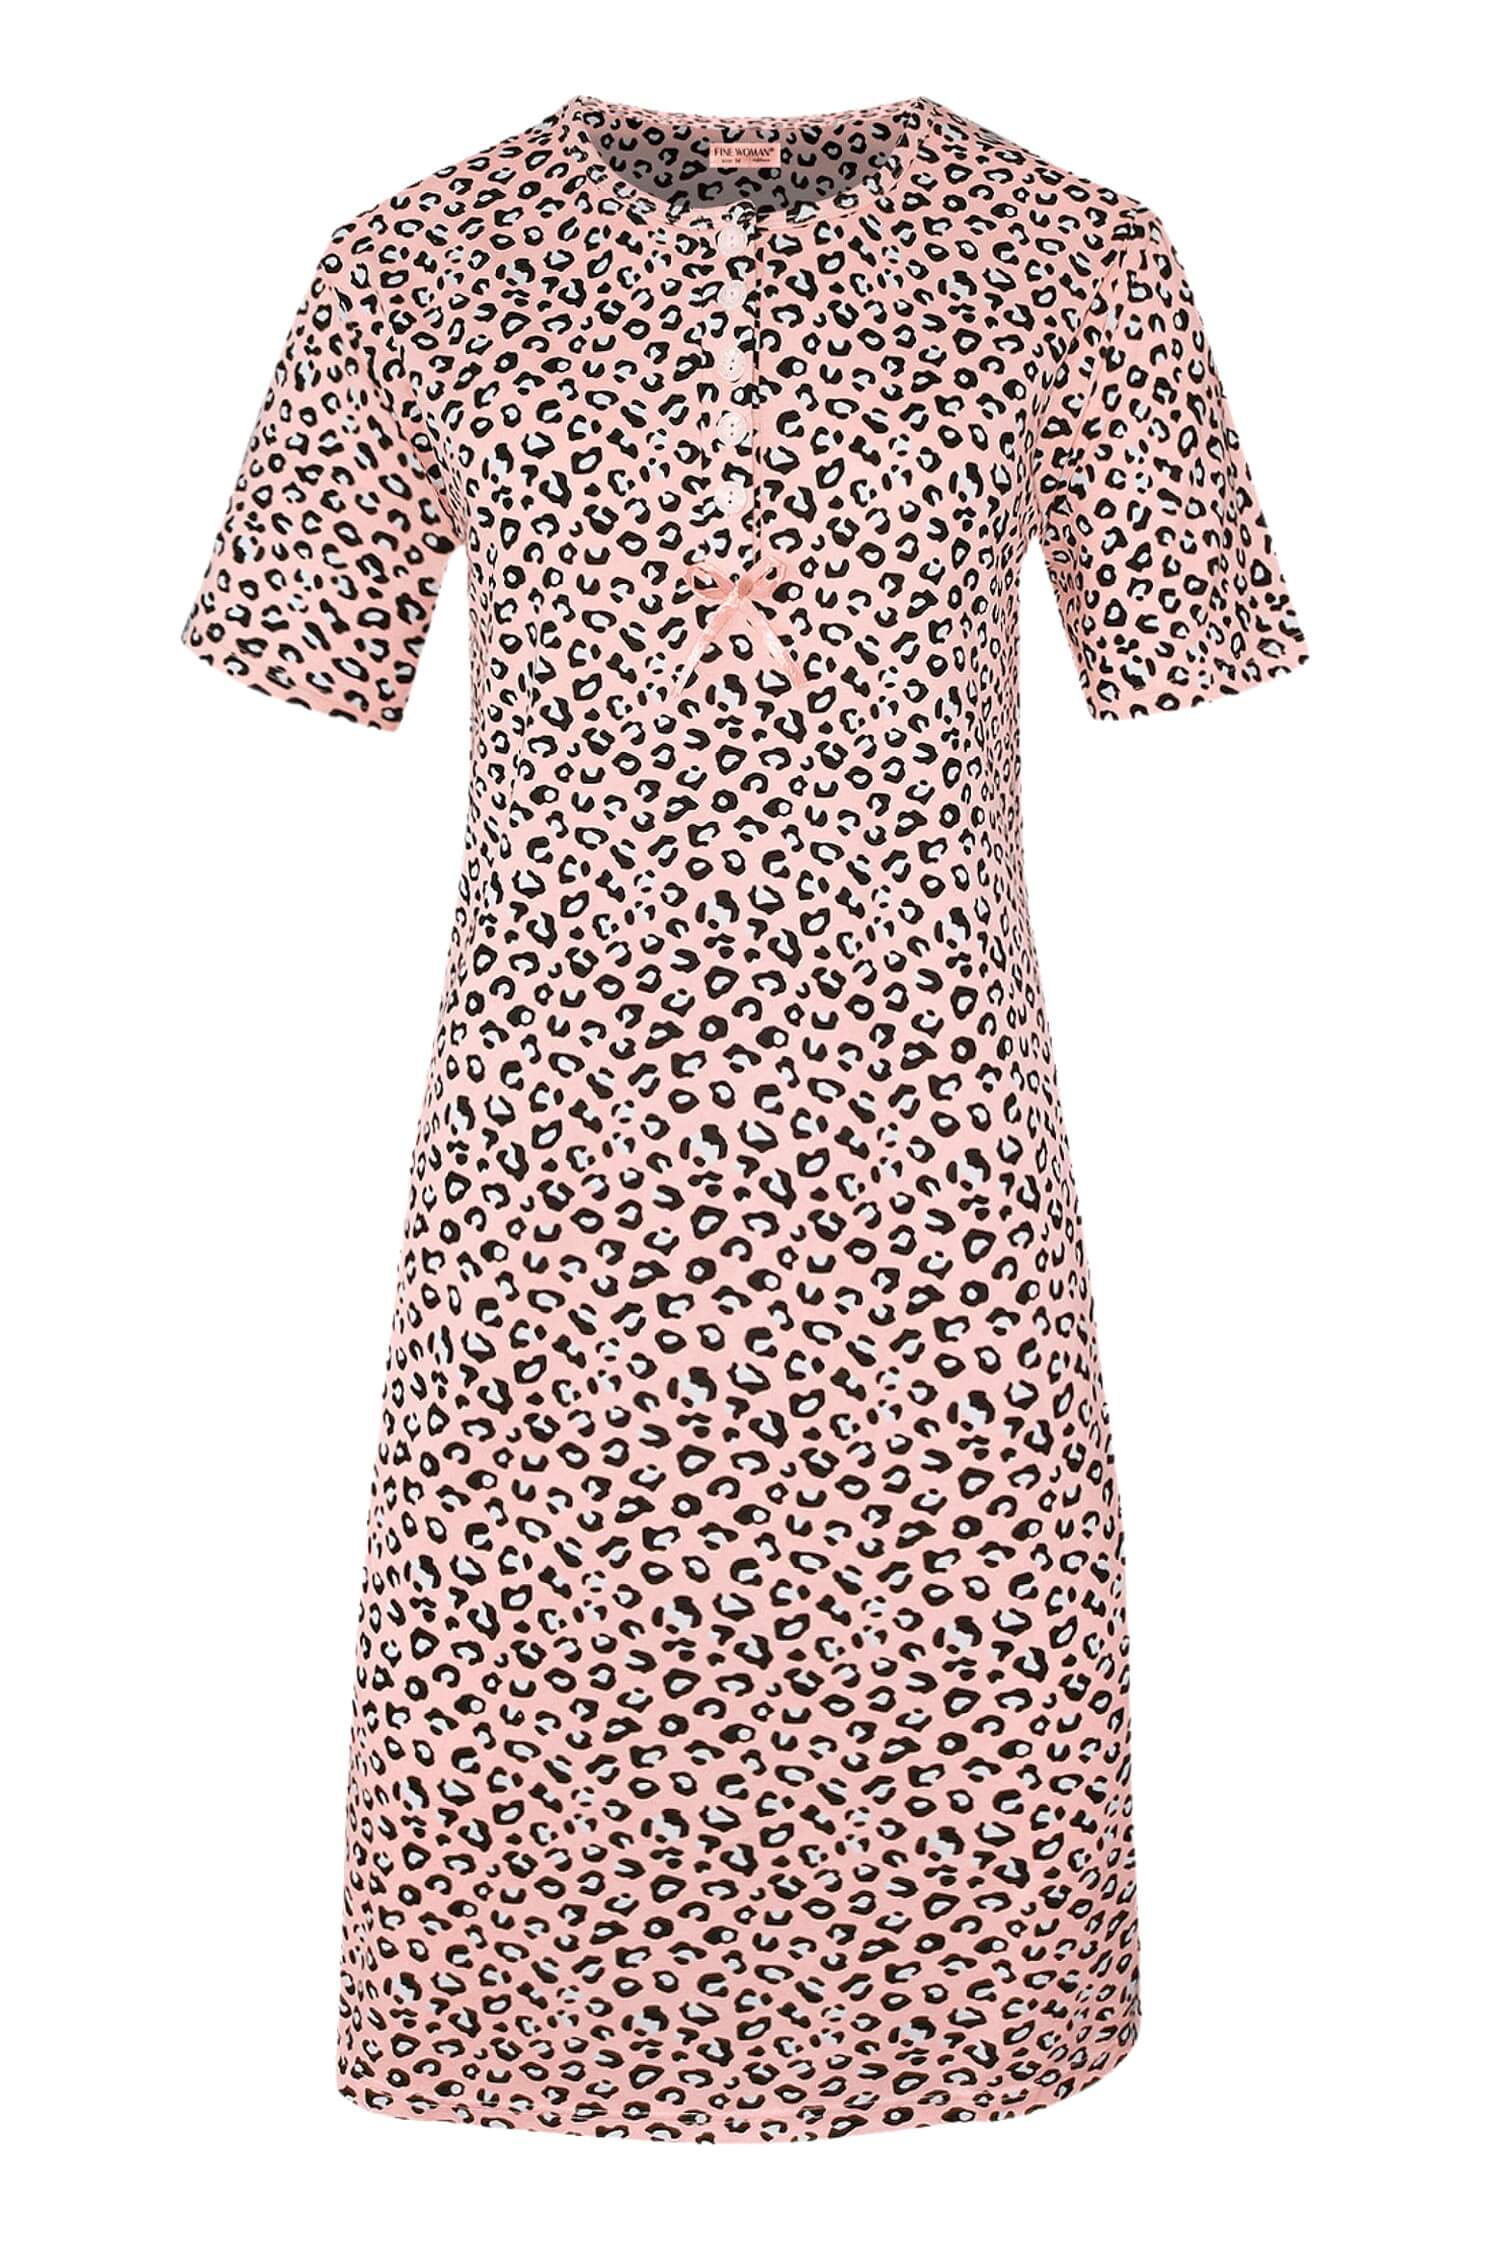 Katarina dámská noční košile leopardí vzor 6529 světle růžová XL